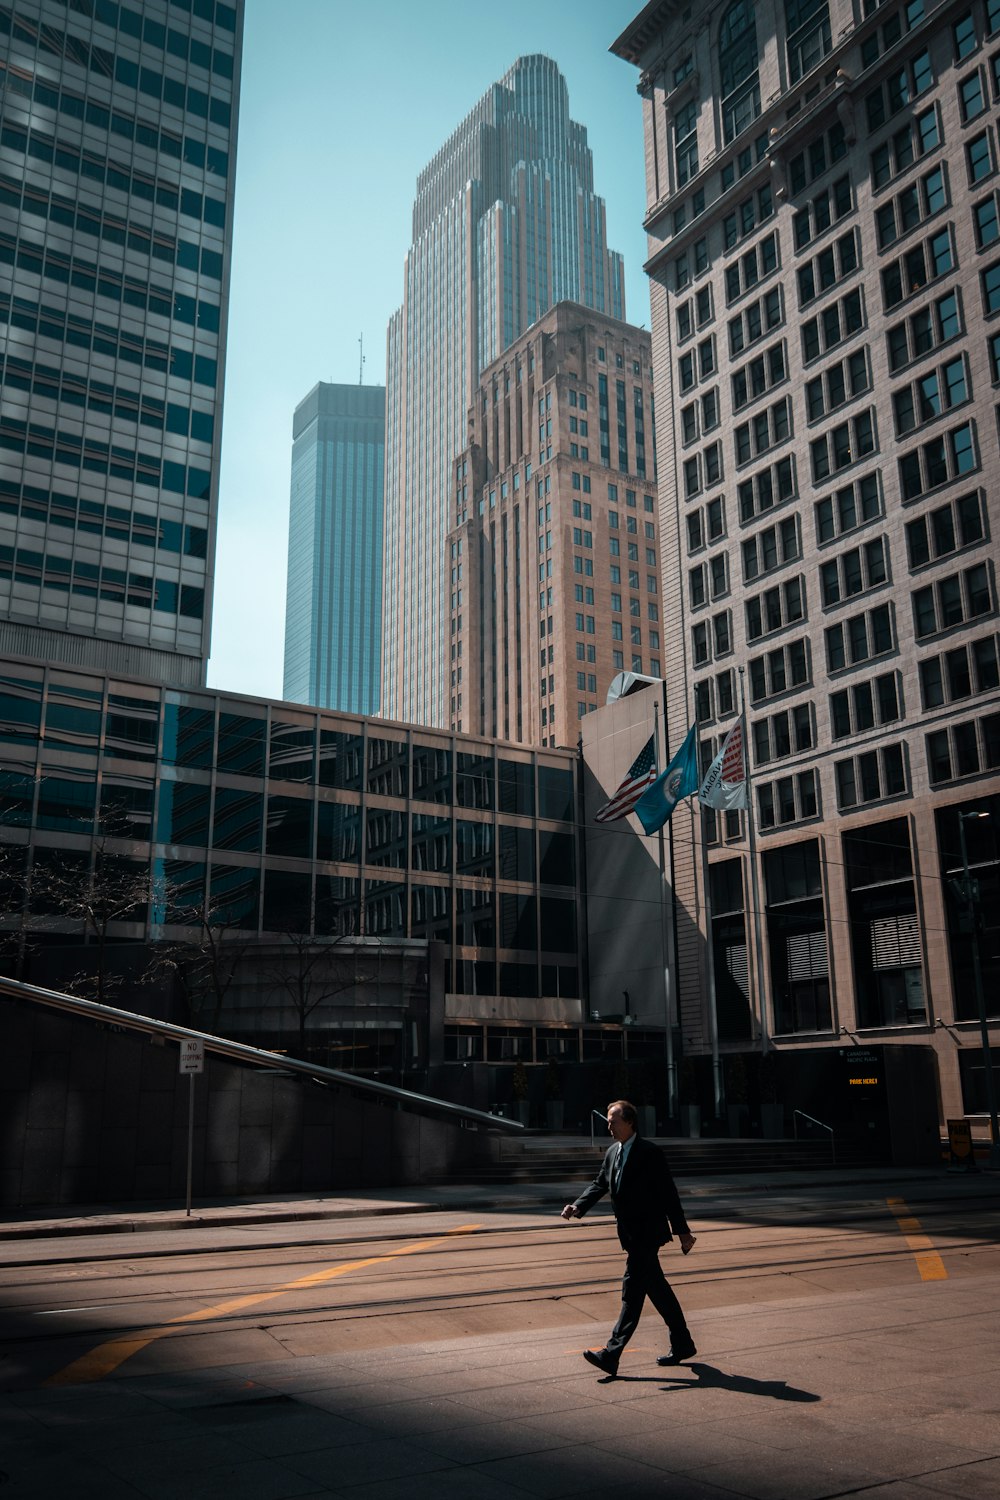 Mann in schwarzer Jacke geht tagsüber auf dem Bürgersteig in der Nähe des Gebäudes spazieren